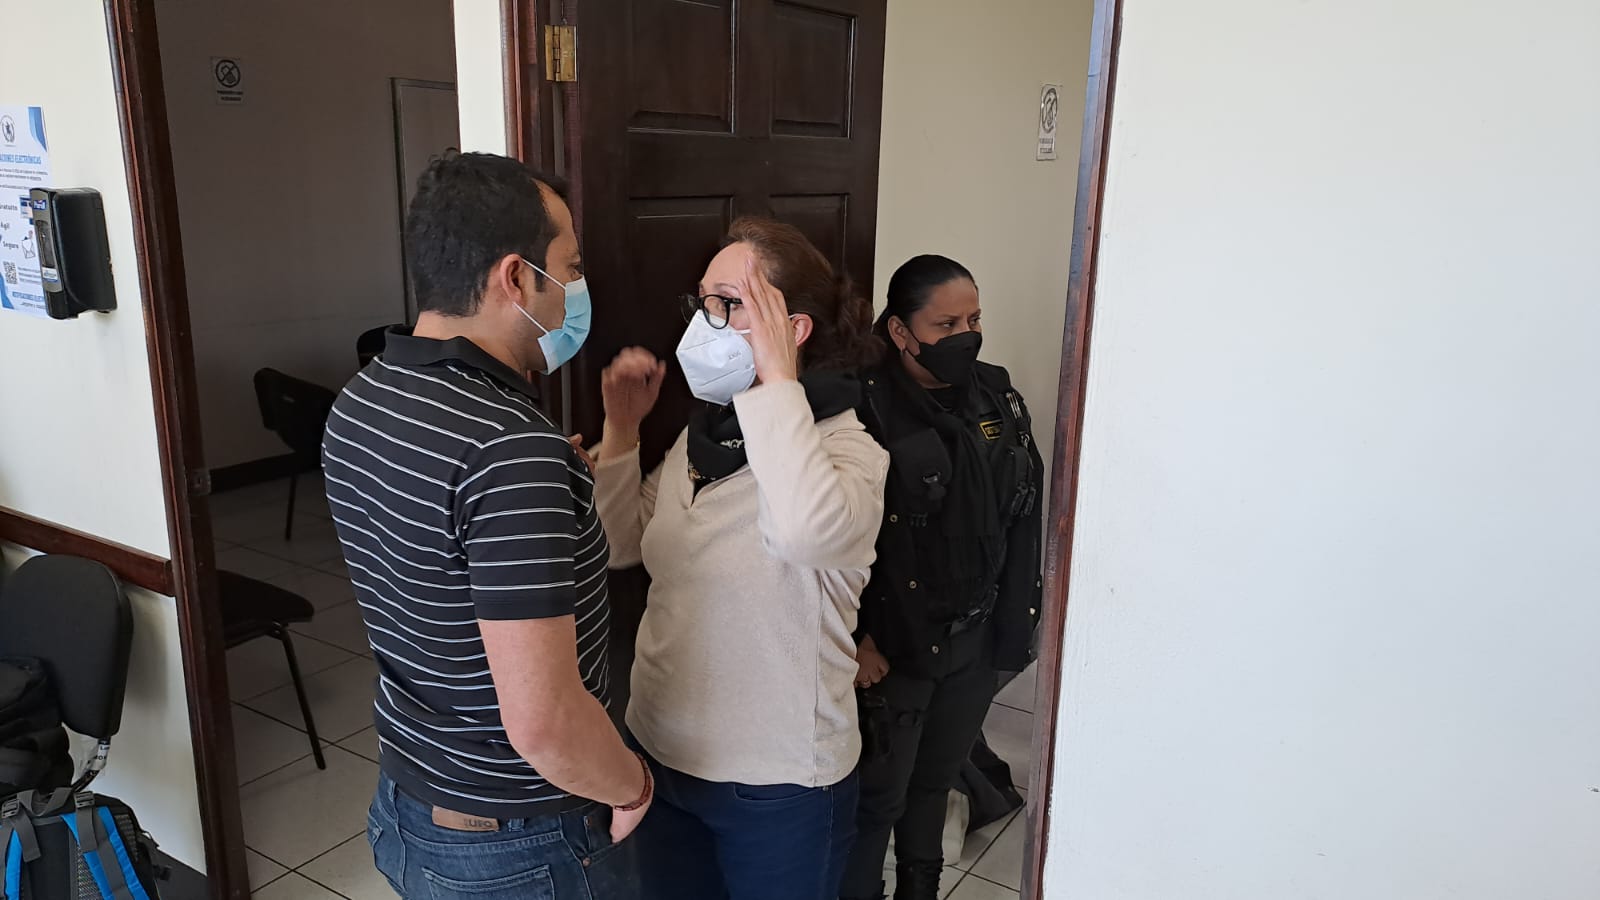 La exfiscal Virginia Laparra asistió a una audiencia este martes 3 de enero en Quetzaltenango. (Foto Prensa Libre: Mynor Toc)